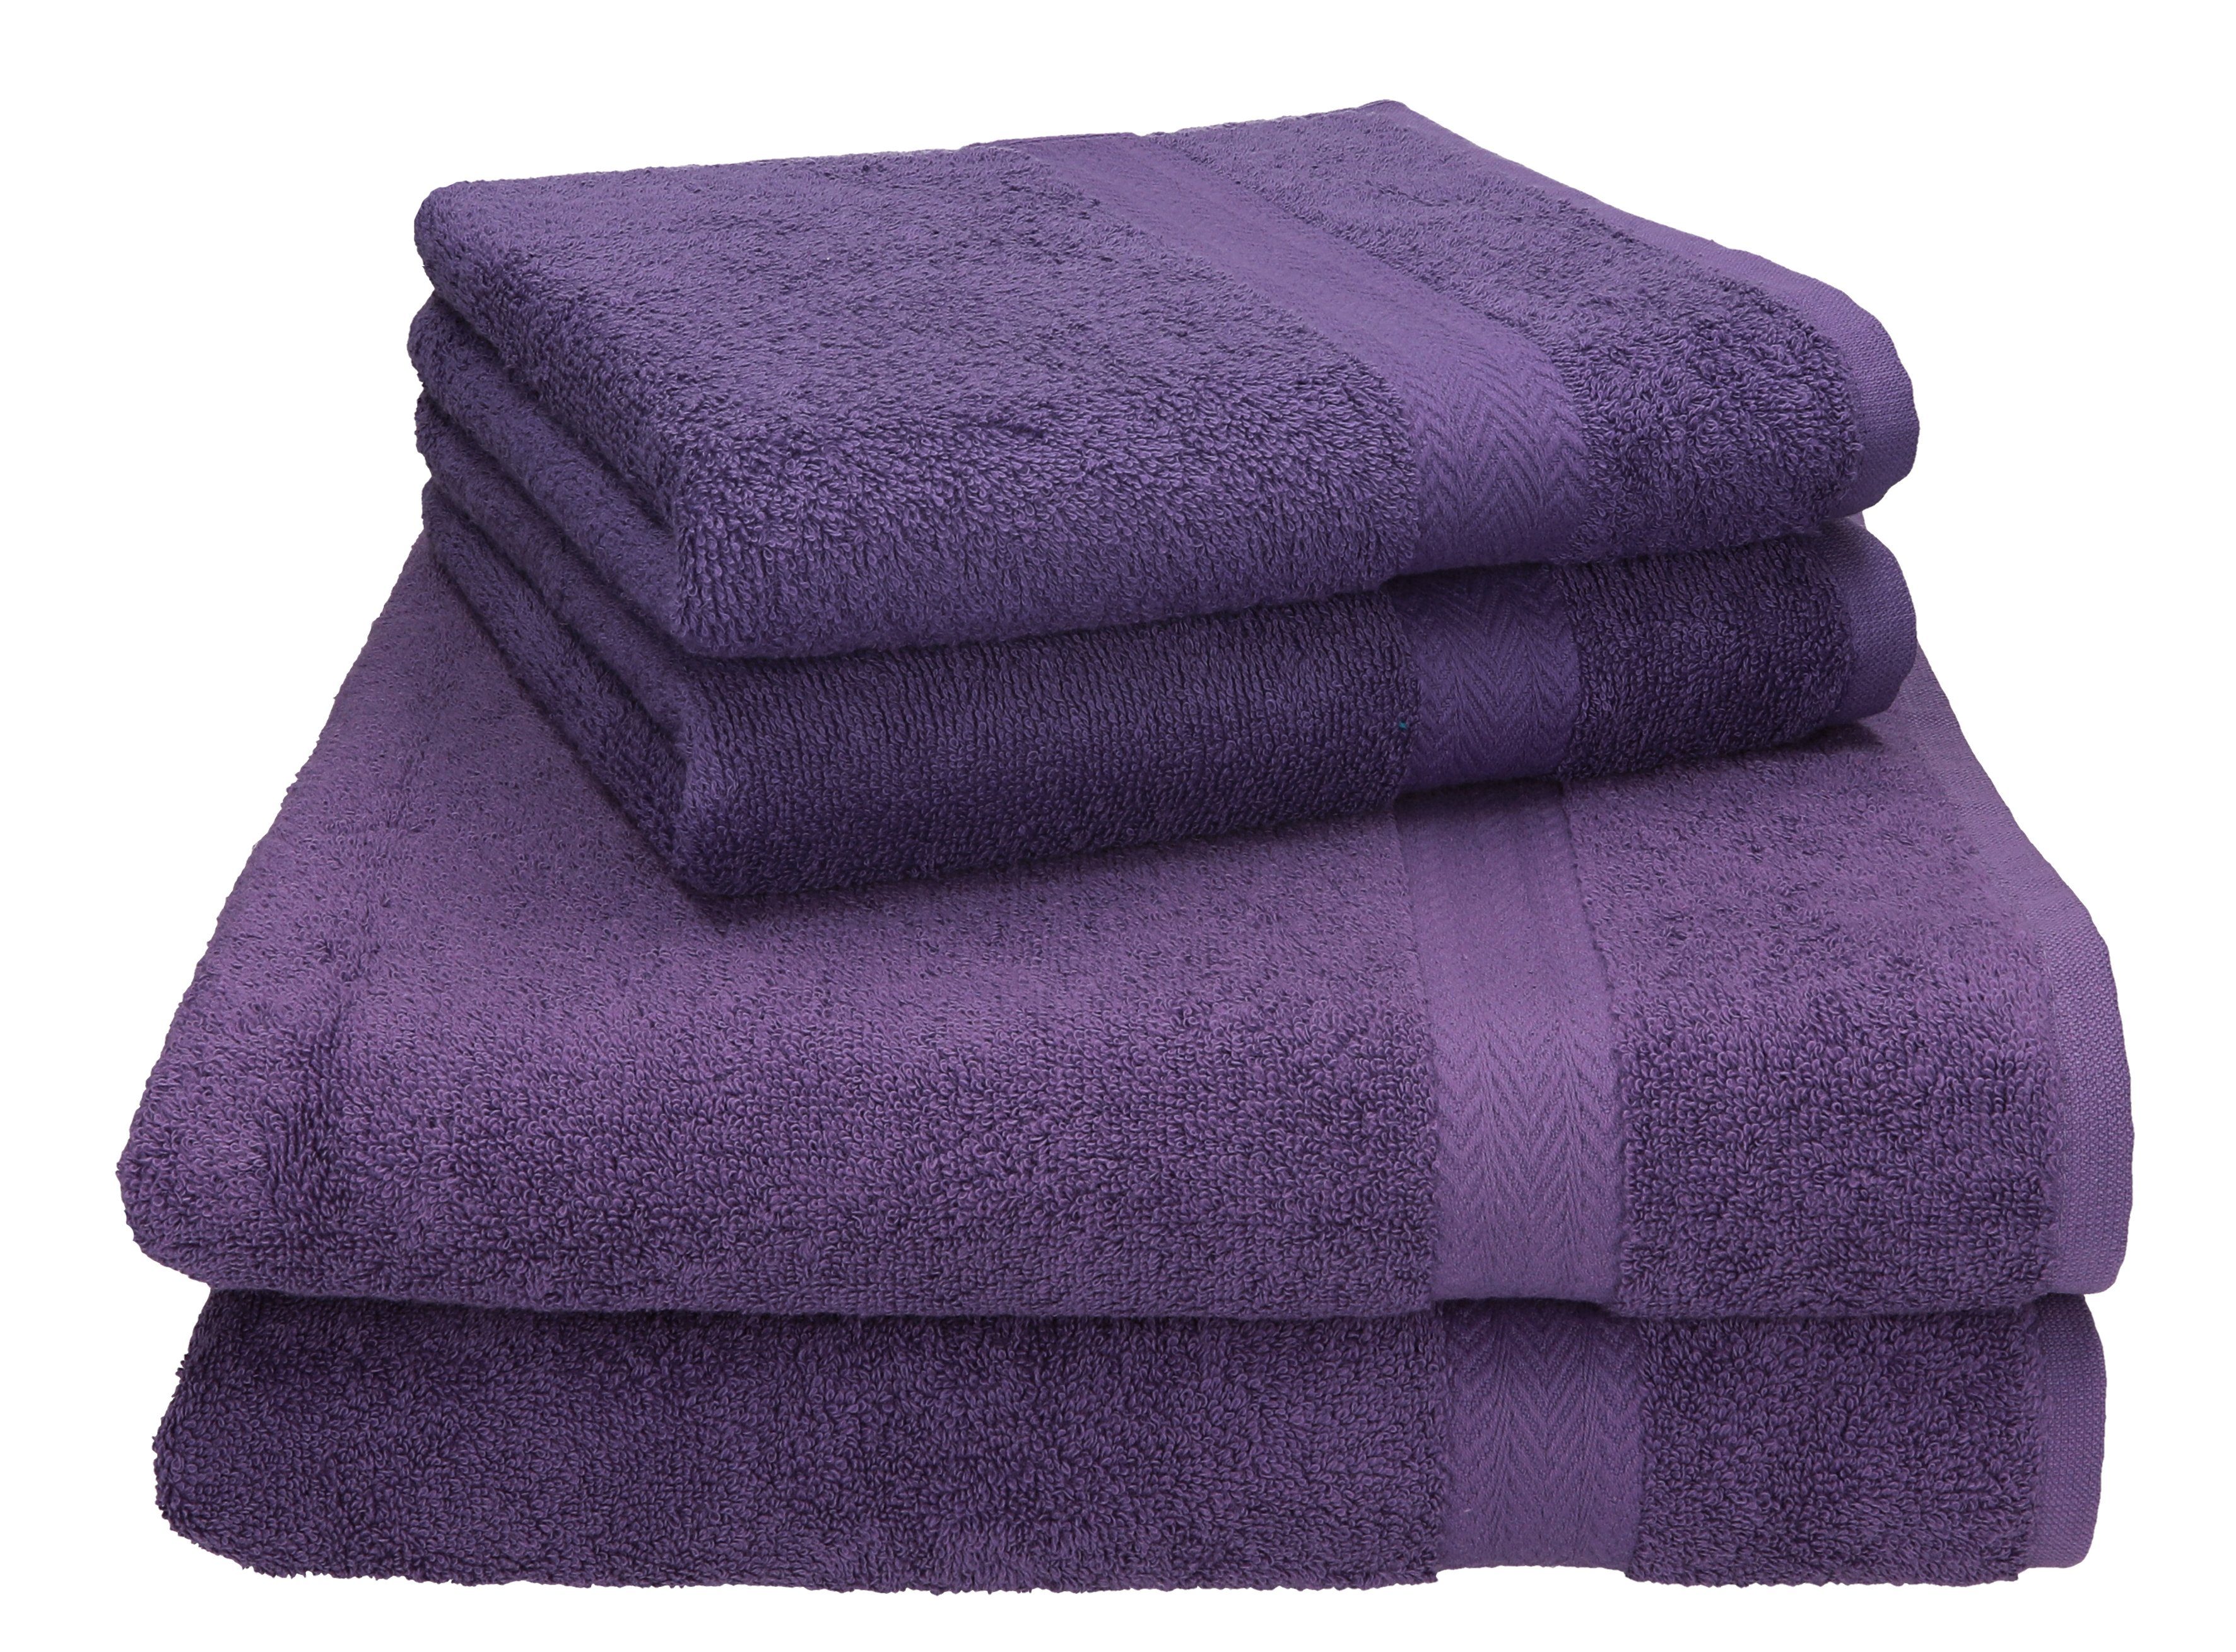 Betz Handtuch Set 4-tlg. PREMIUM 2 Handtücher und 2 Duschtücher, 100% Baumwolle, (4-tlg) lila | Handtuch-Sets